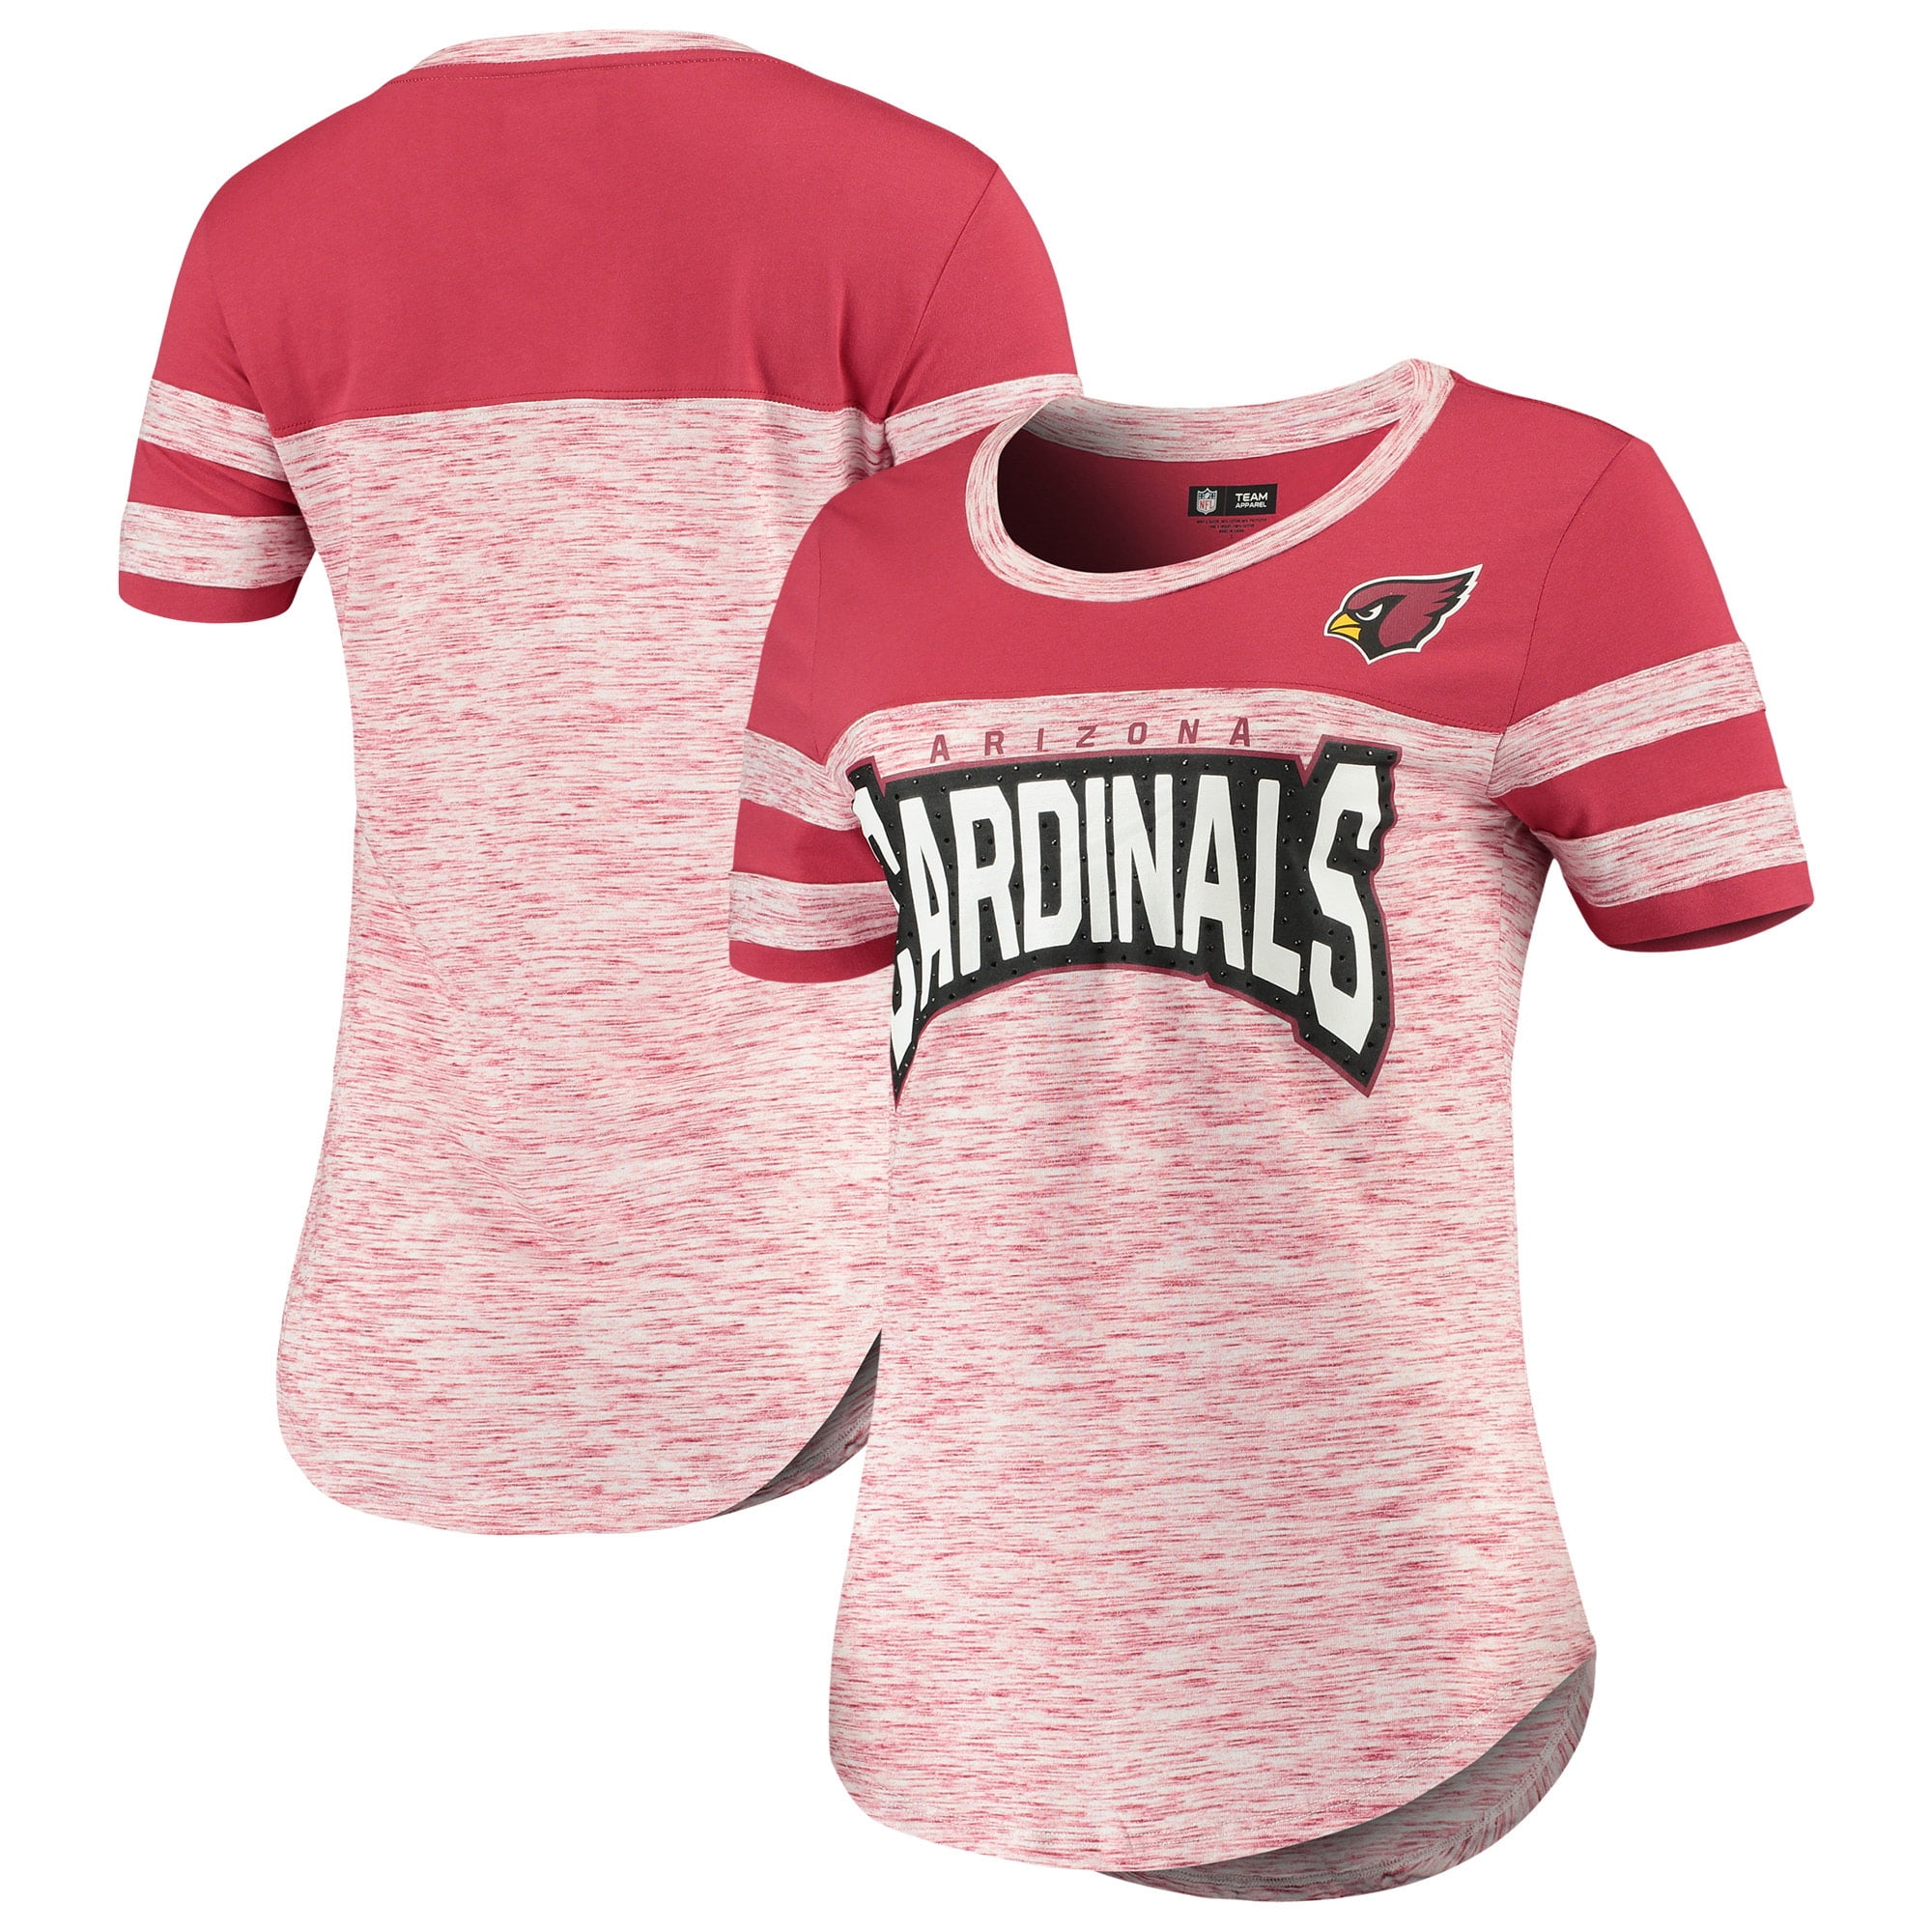 cardinals jersey for women